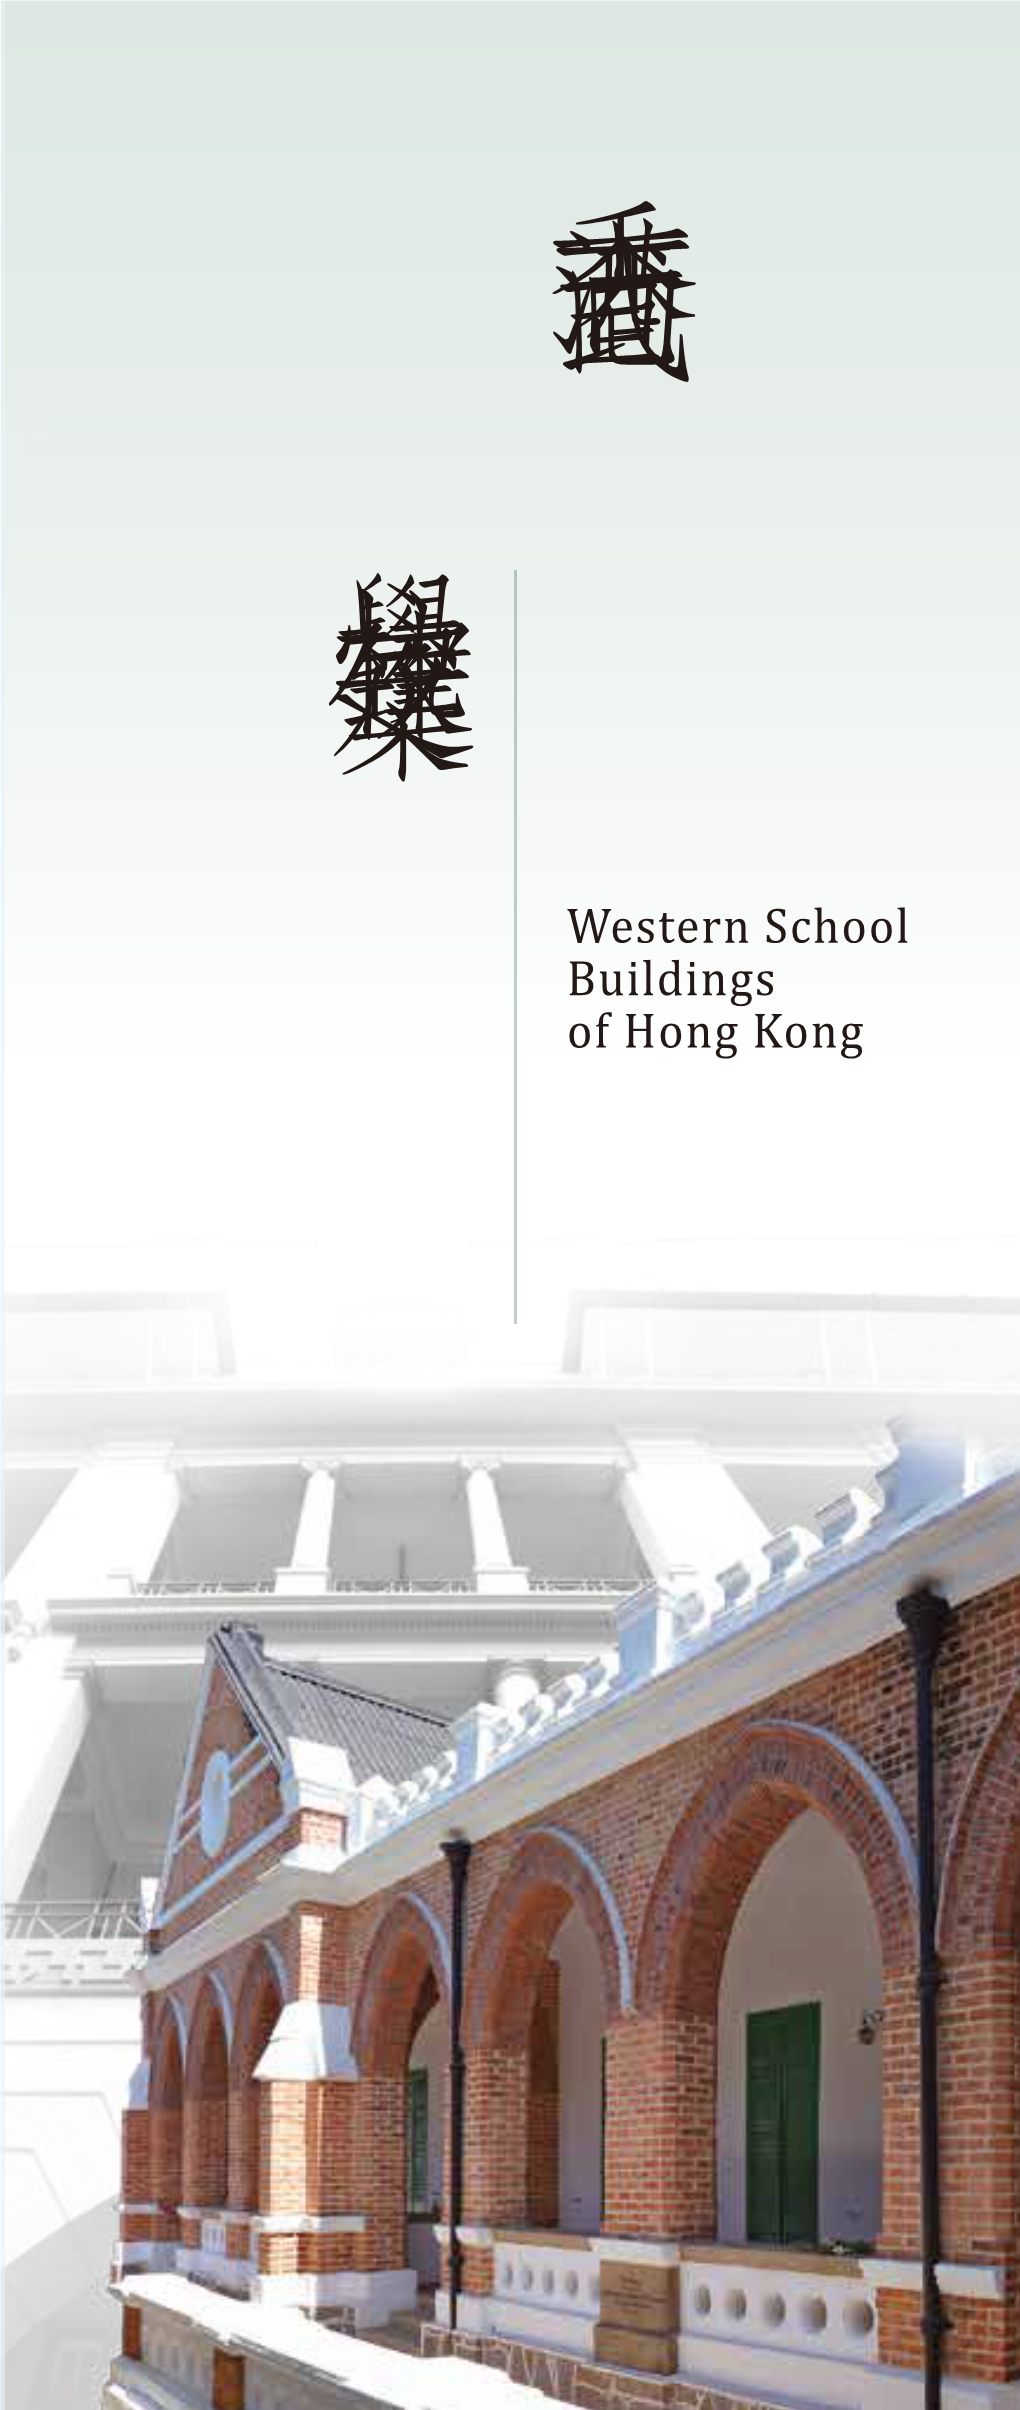 香港西式學校建築分布圖 Location Map of Western School Buildings Which Are Declared Monuments in Hong Kong